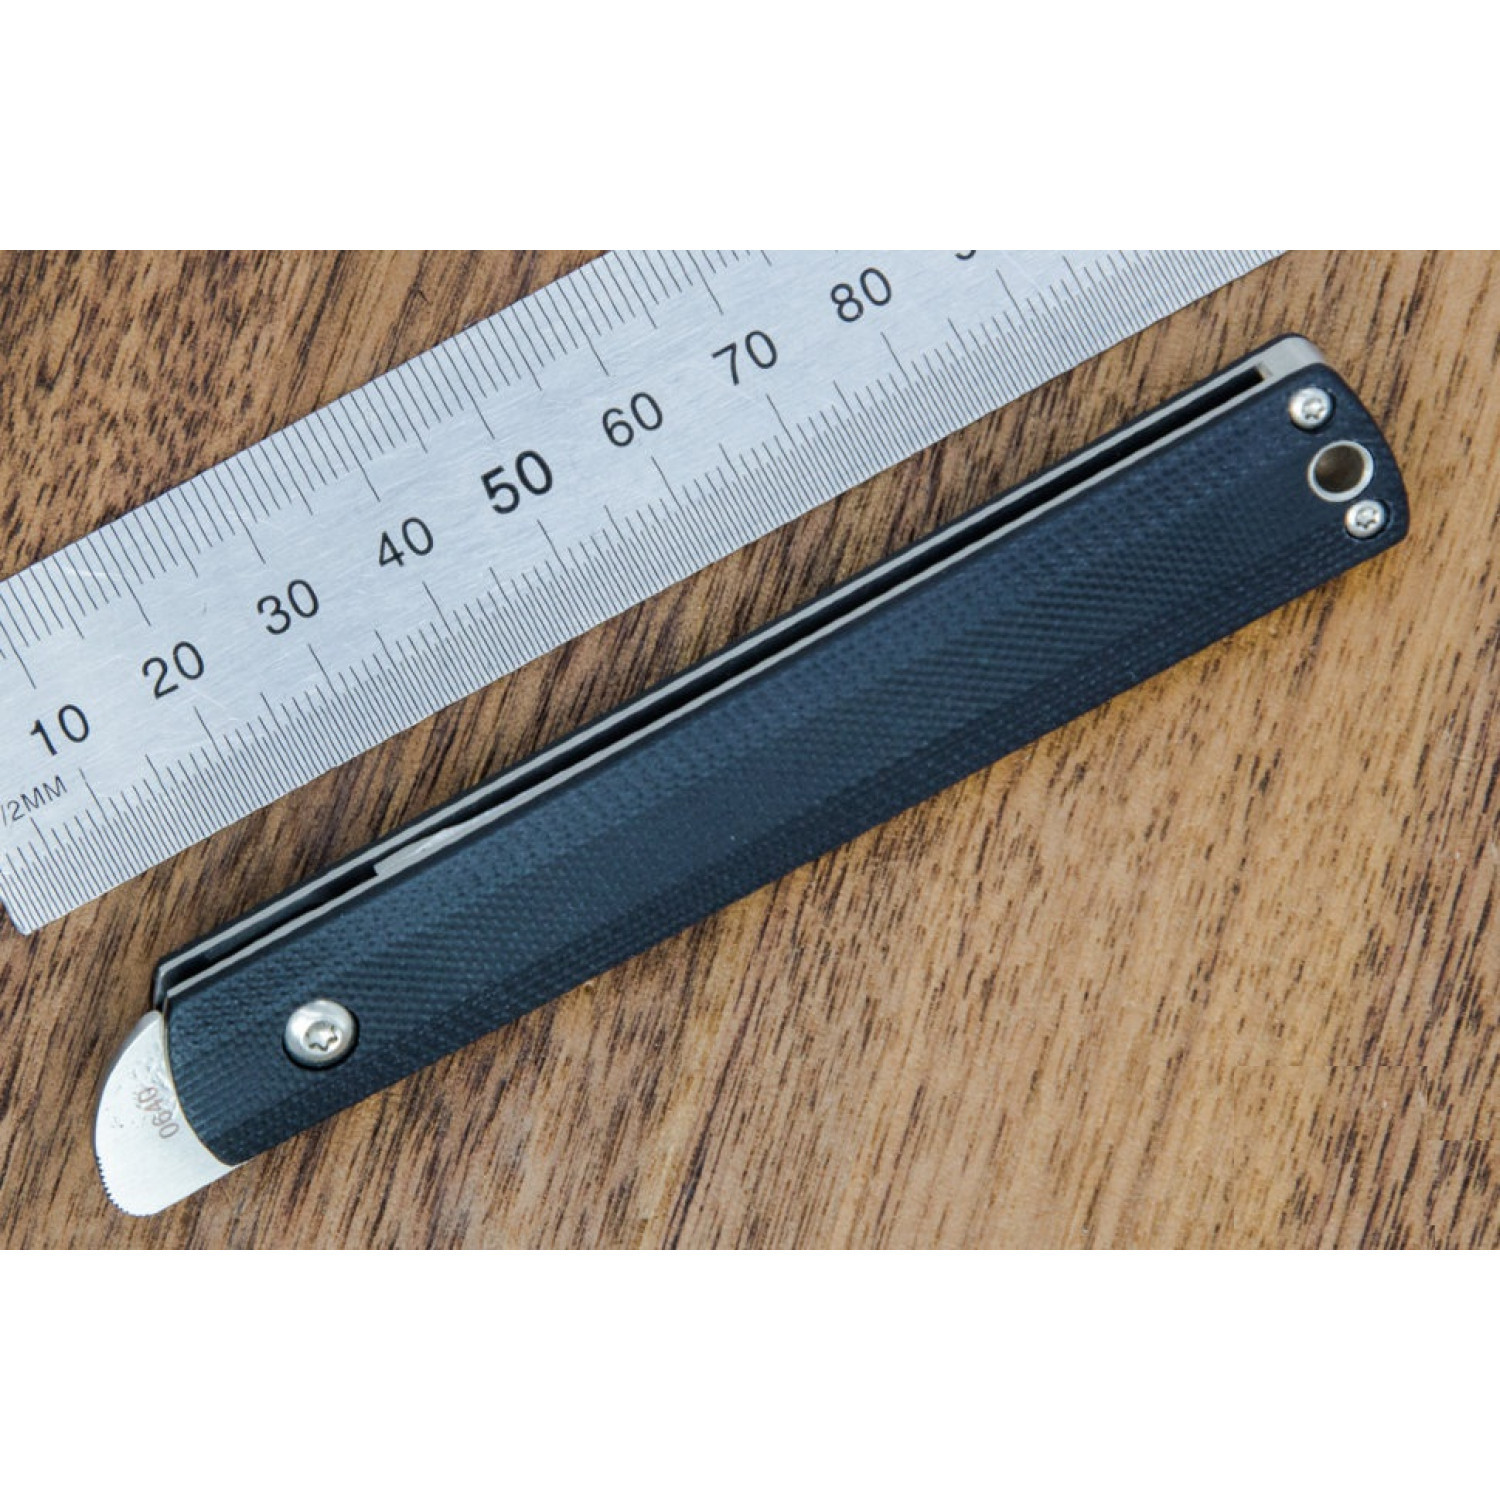 Складной нож Wasabi G10 - Boker Plus 01BO630, лезвие сталь 440C Satin, рукоять стеклотекстолит G-10, чёрный - фото 4